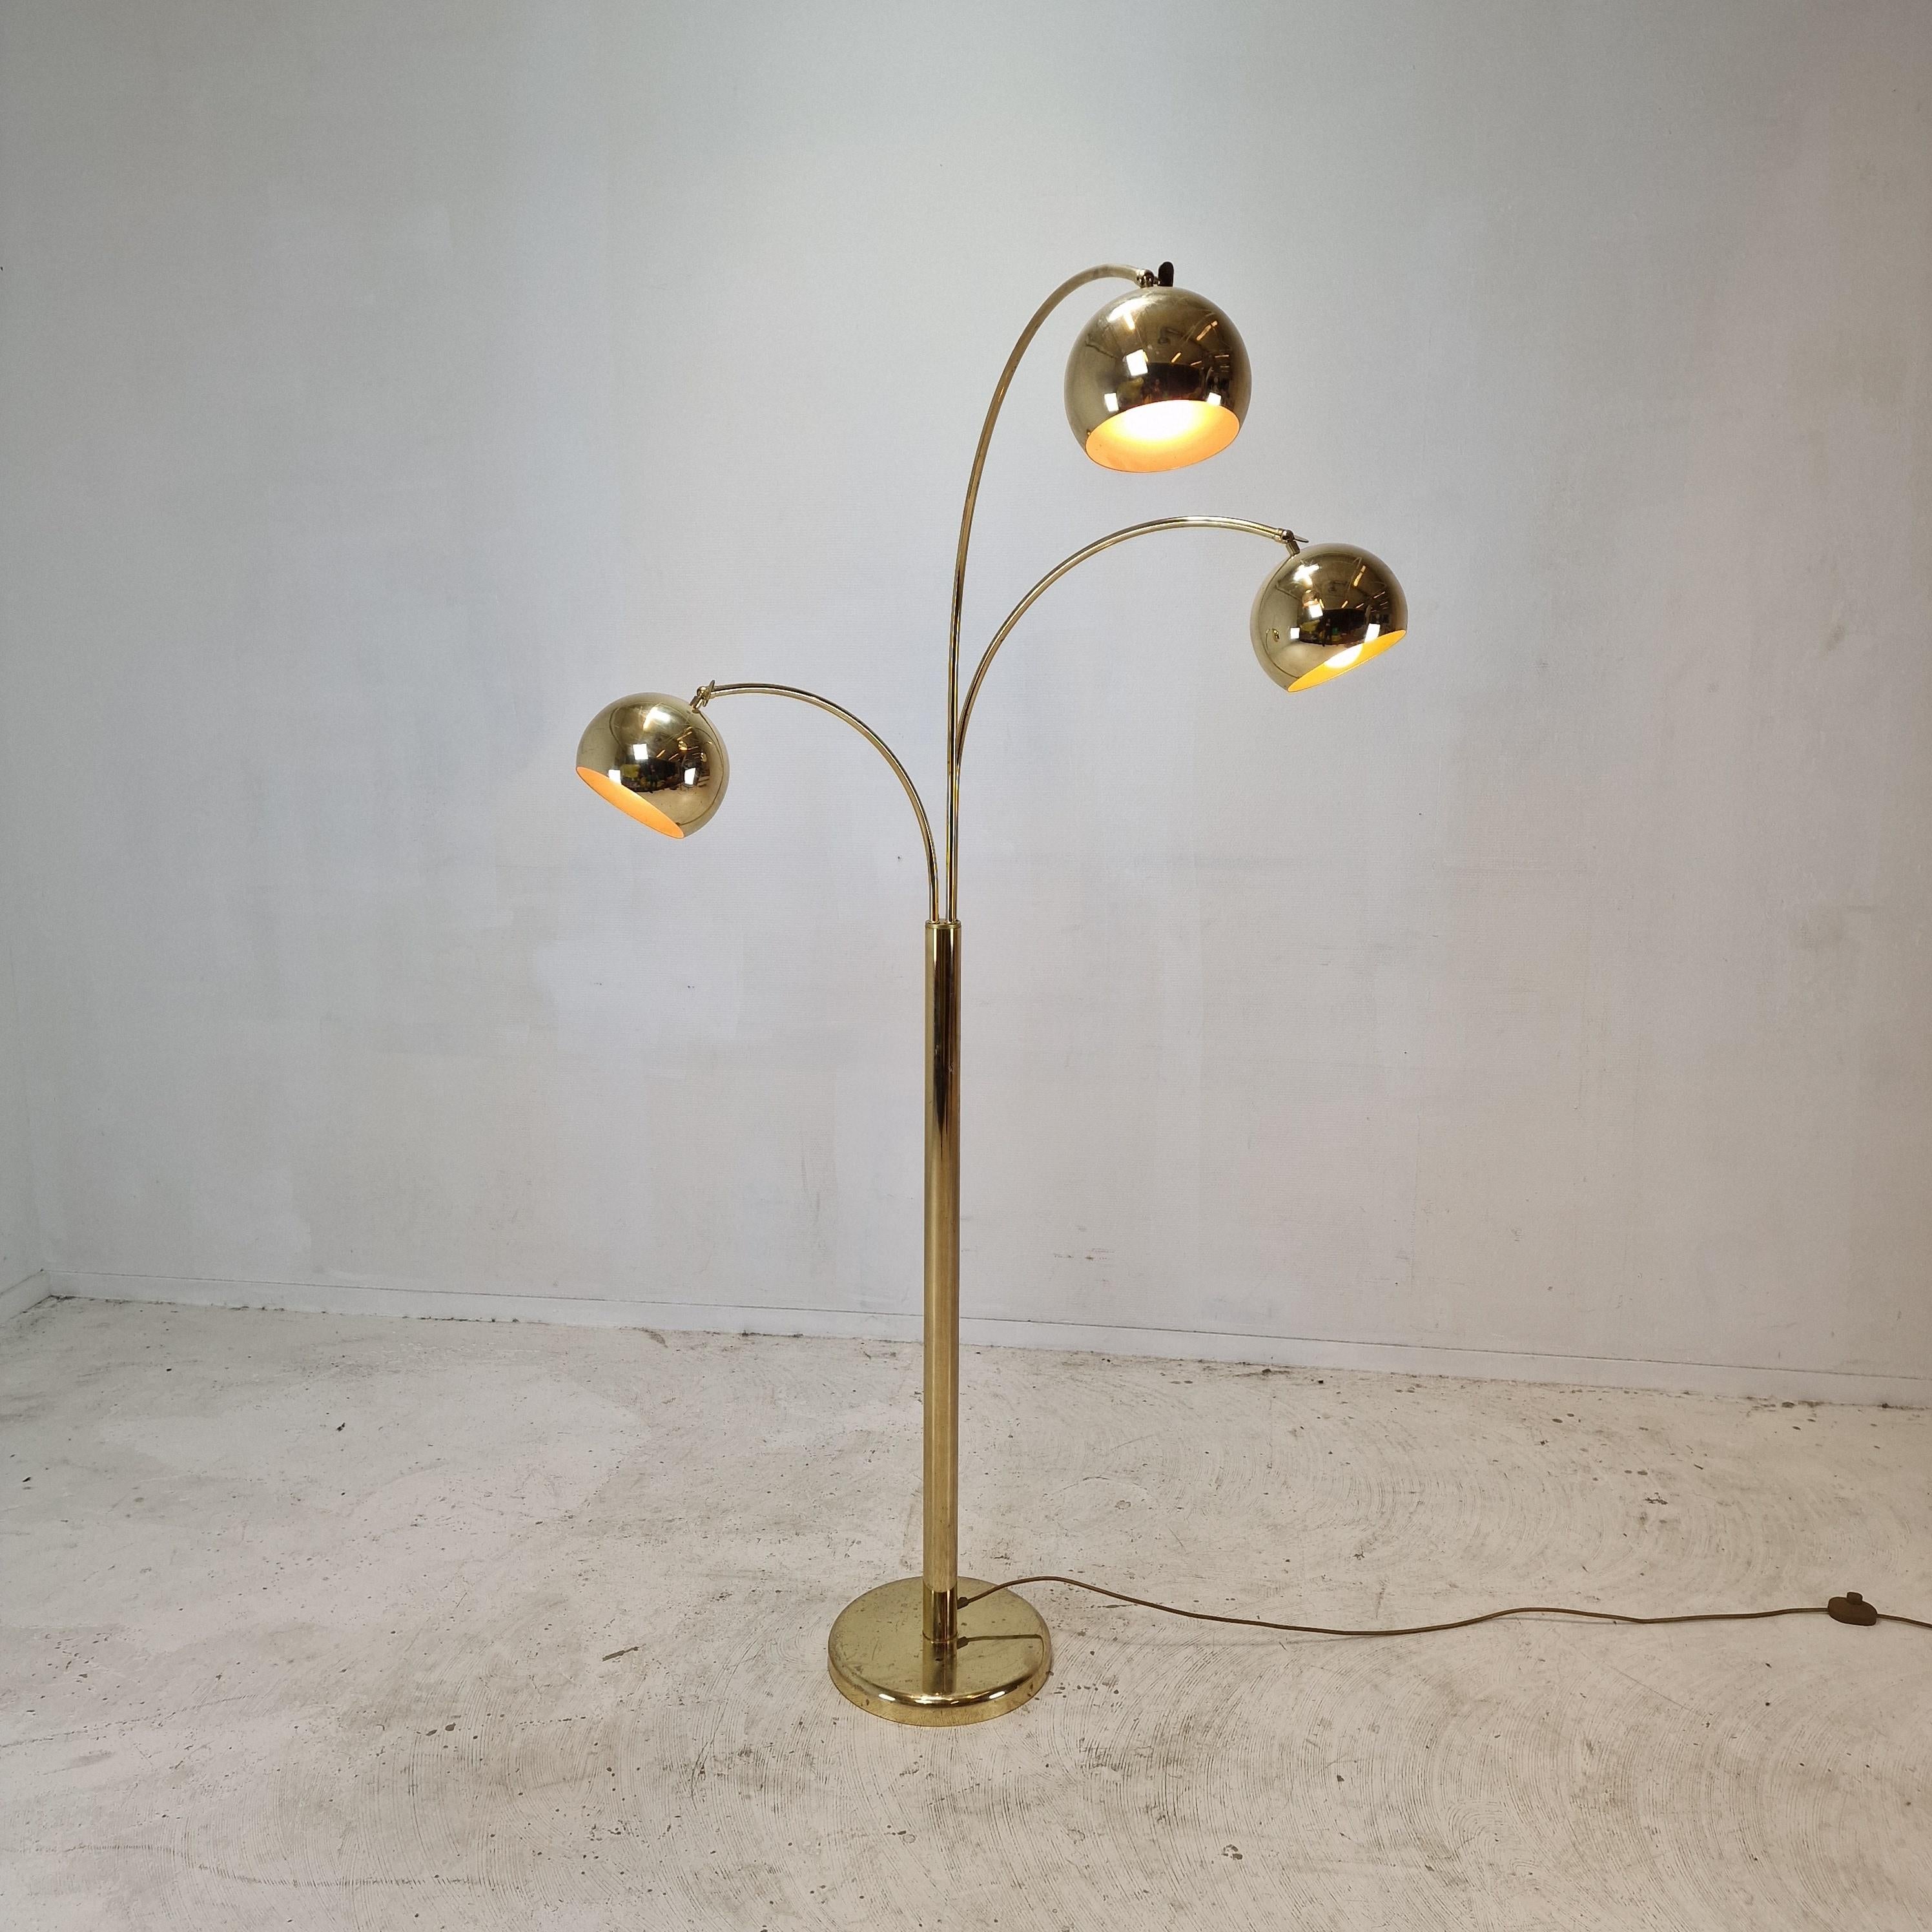 Magnifique lampadaire Midcentury fabriqué en Allemagne dans les années 1970. 

Il est fascinant avec son design de l'âge de l'espace et ses trois bras orientables.
Les stores peuvent également être déplacés, voir les photos de détail avec les vis à